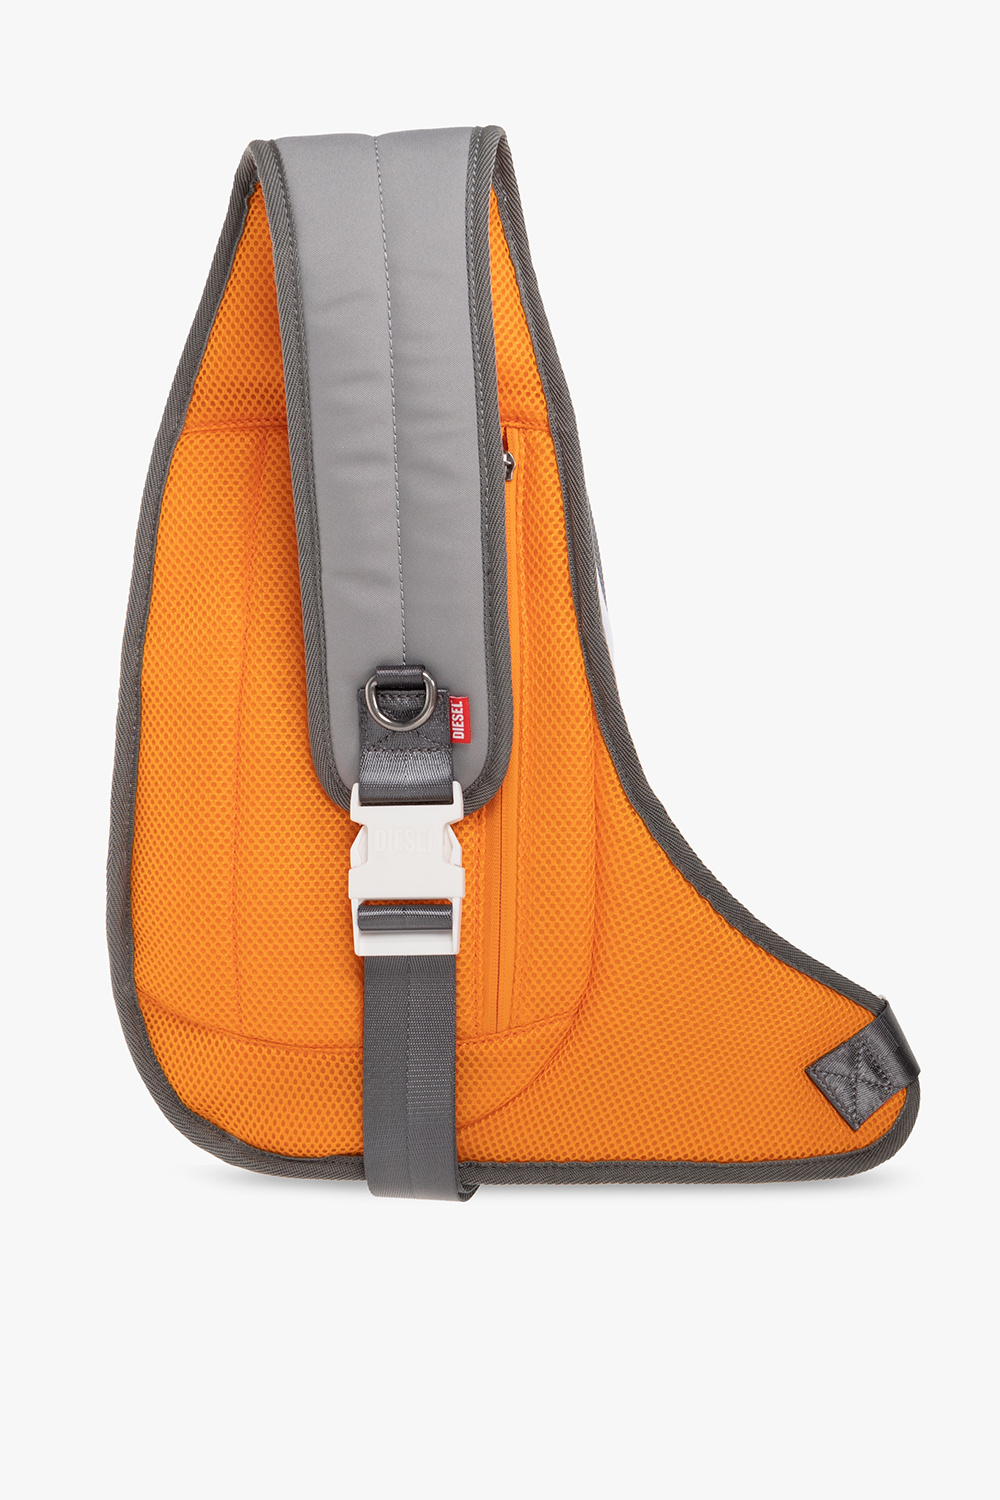 Diesel ‘1DR-POD’ backpack | Men's Bags | Vitkac